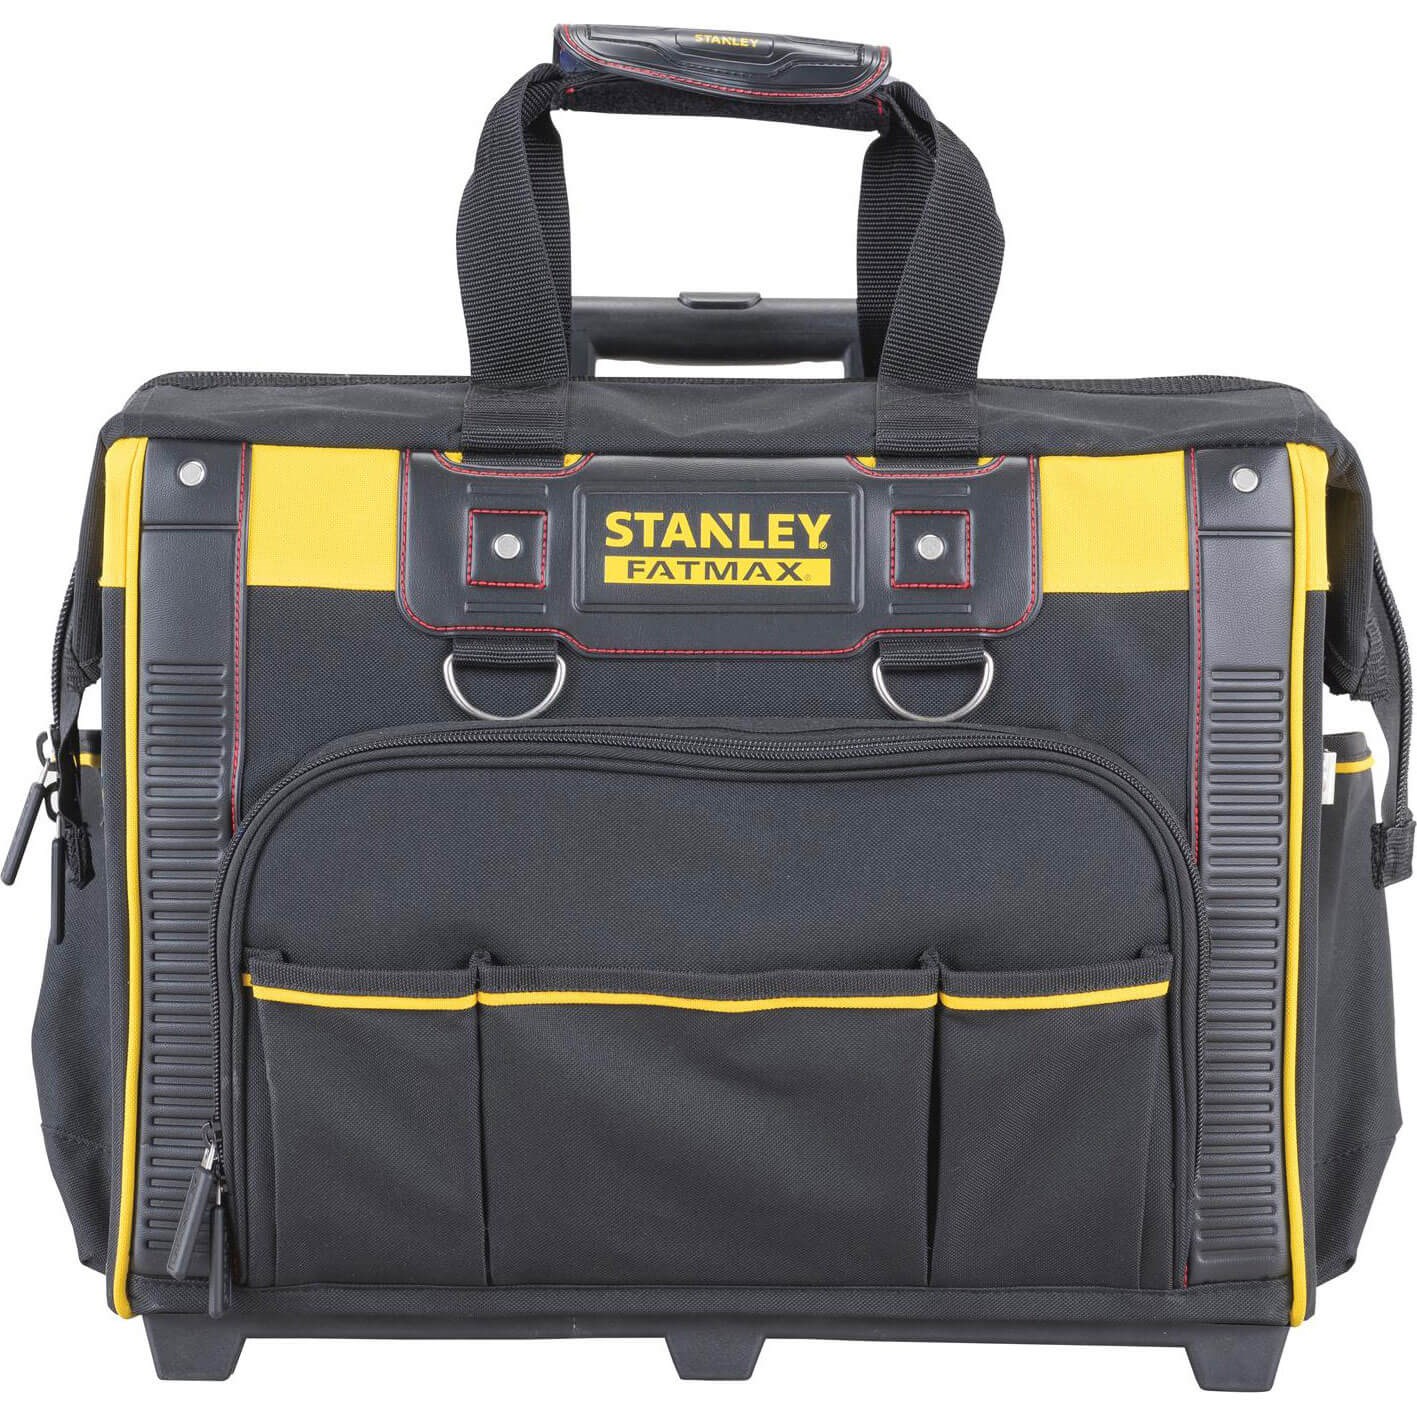 Stanley Fatmax Tool Bag on Wheels